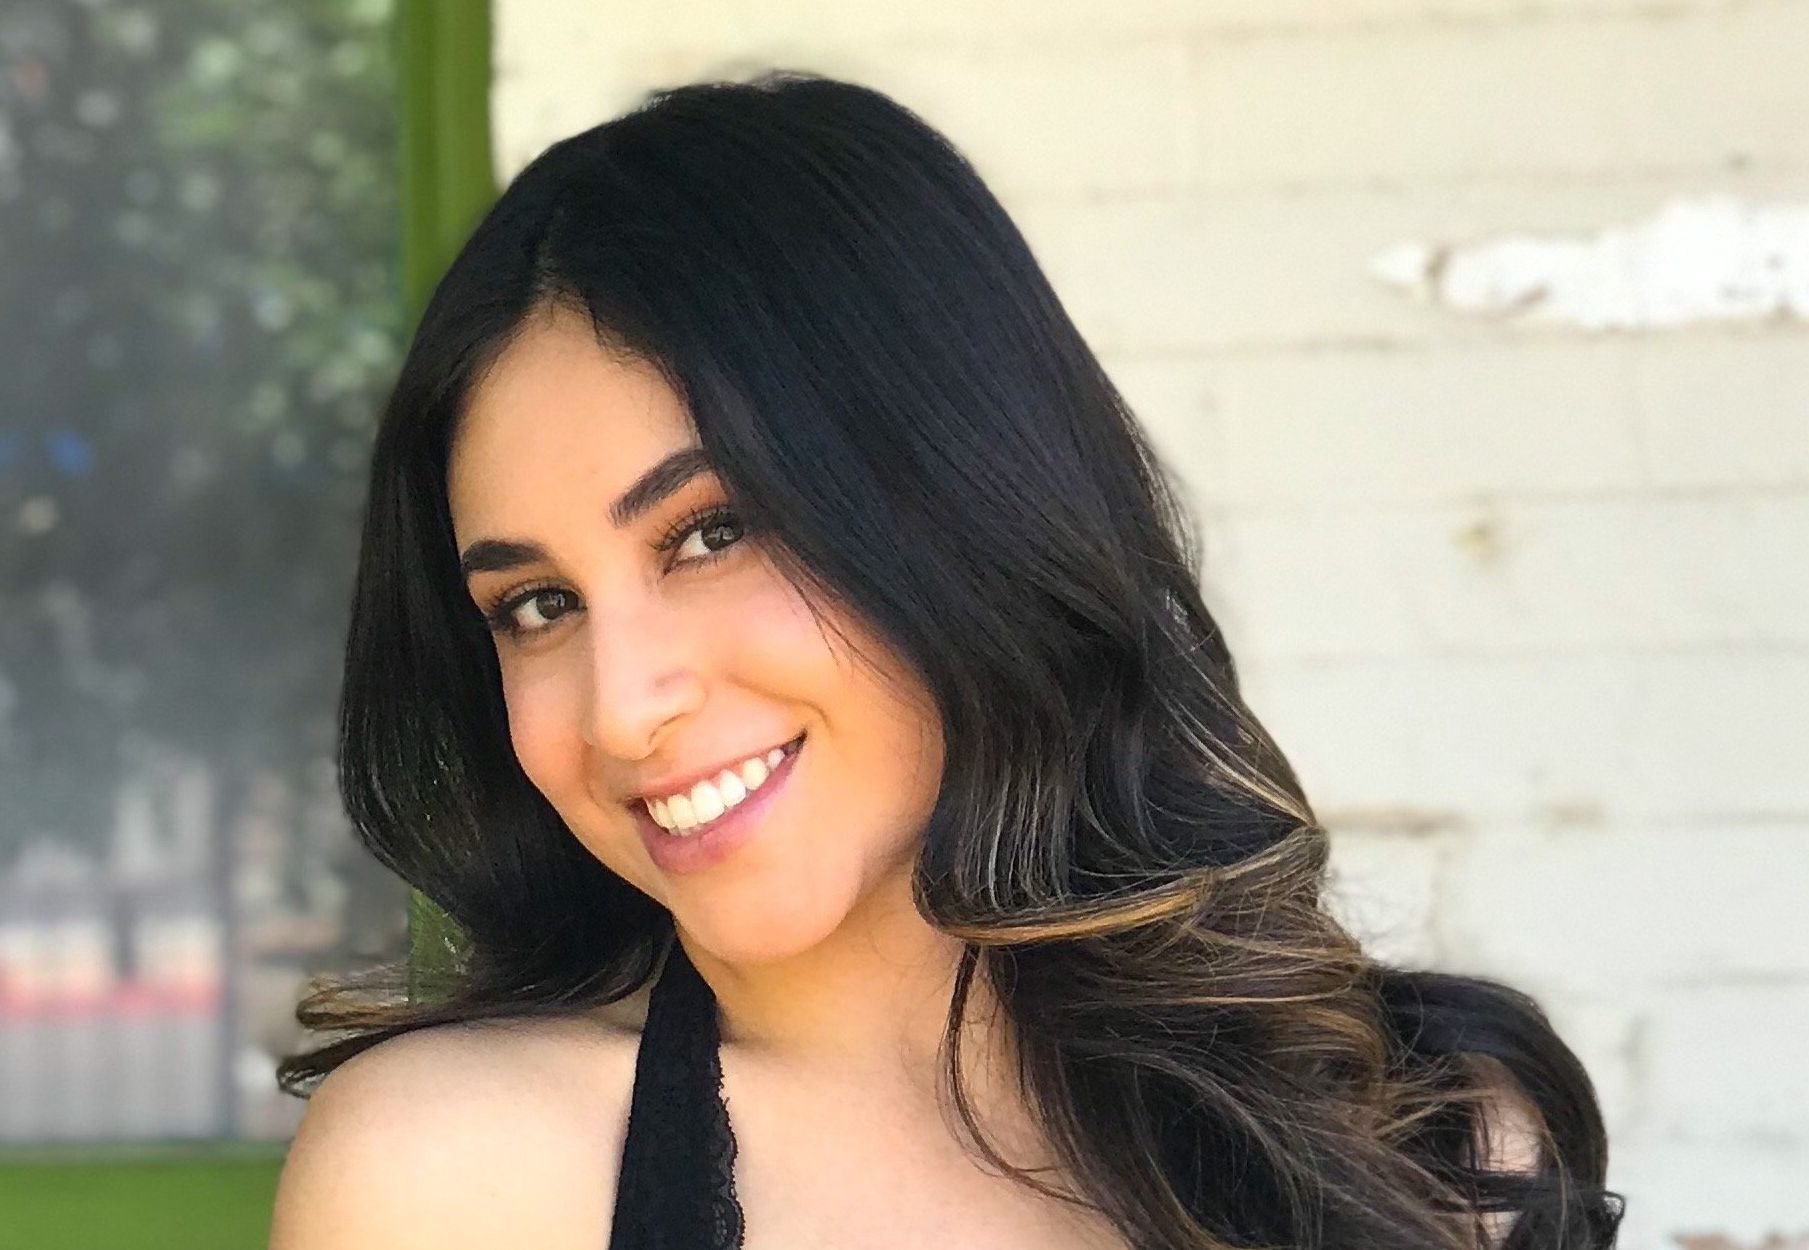 Meet Vanessa Gonzalez